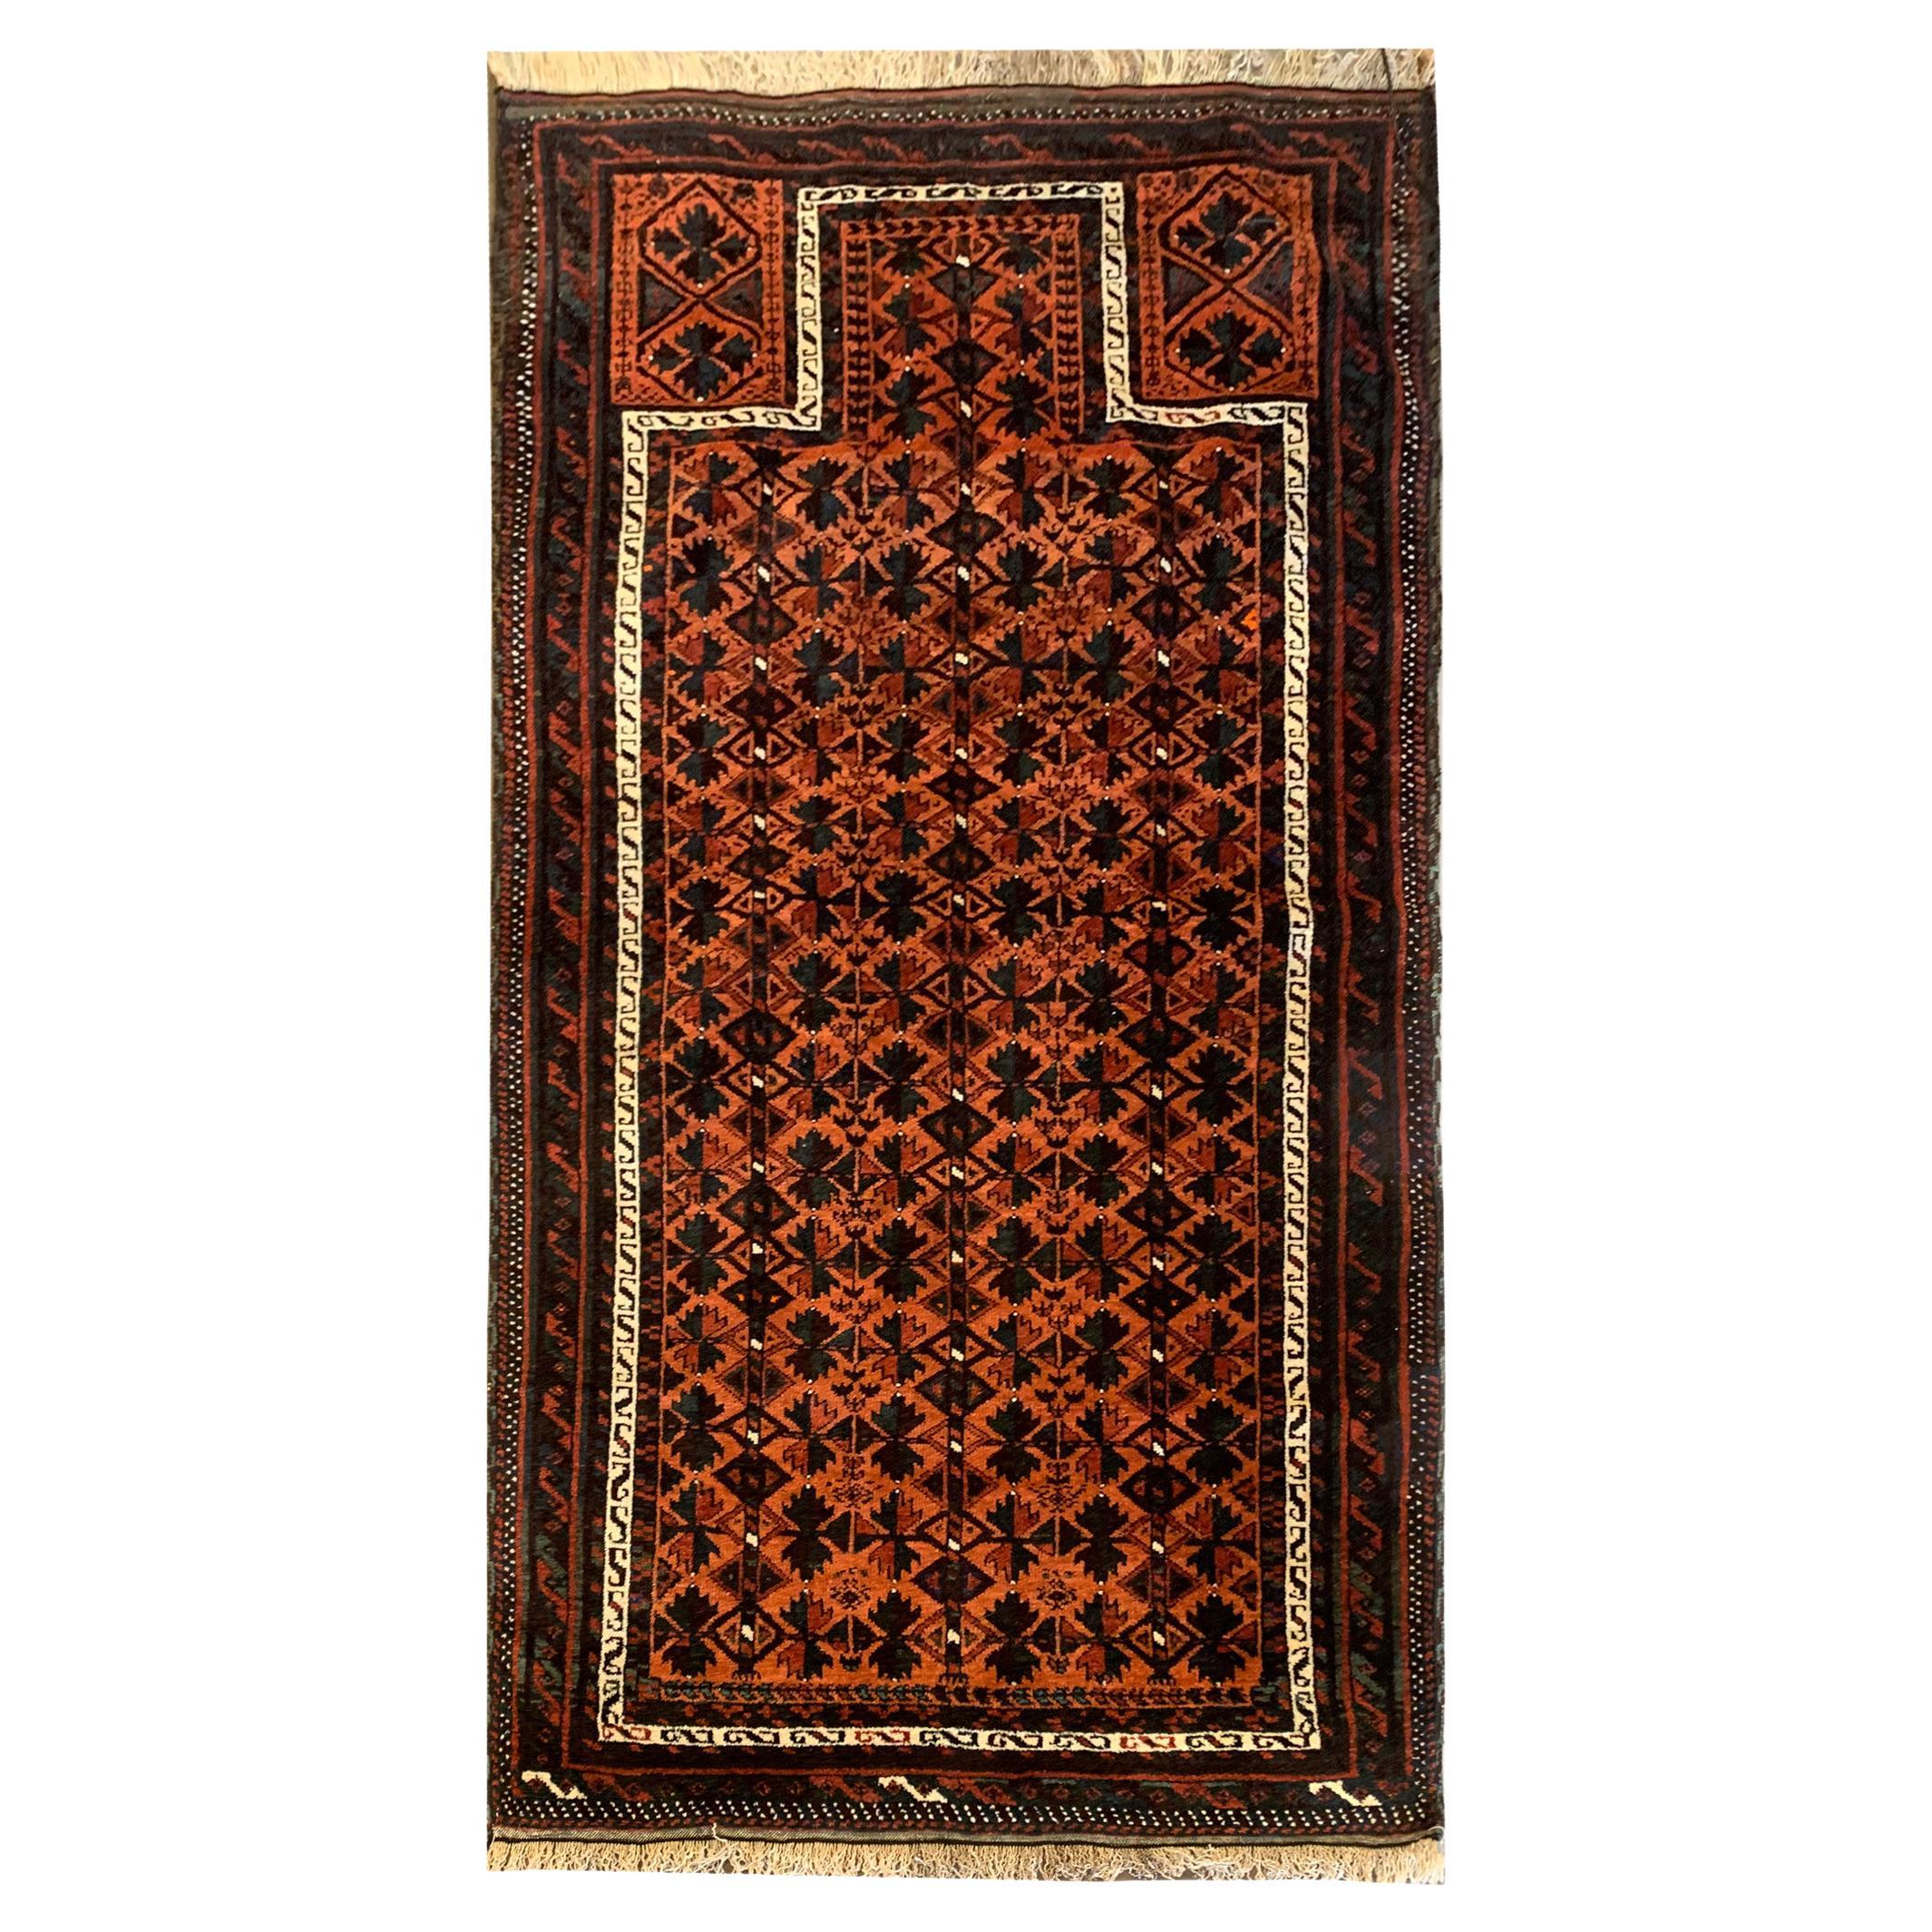 Traditioneller handgefertigter Teppich aus rostfarbener Wolle, orientalischer geometrischer Teppich